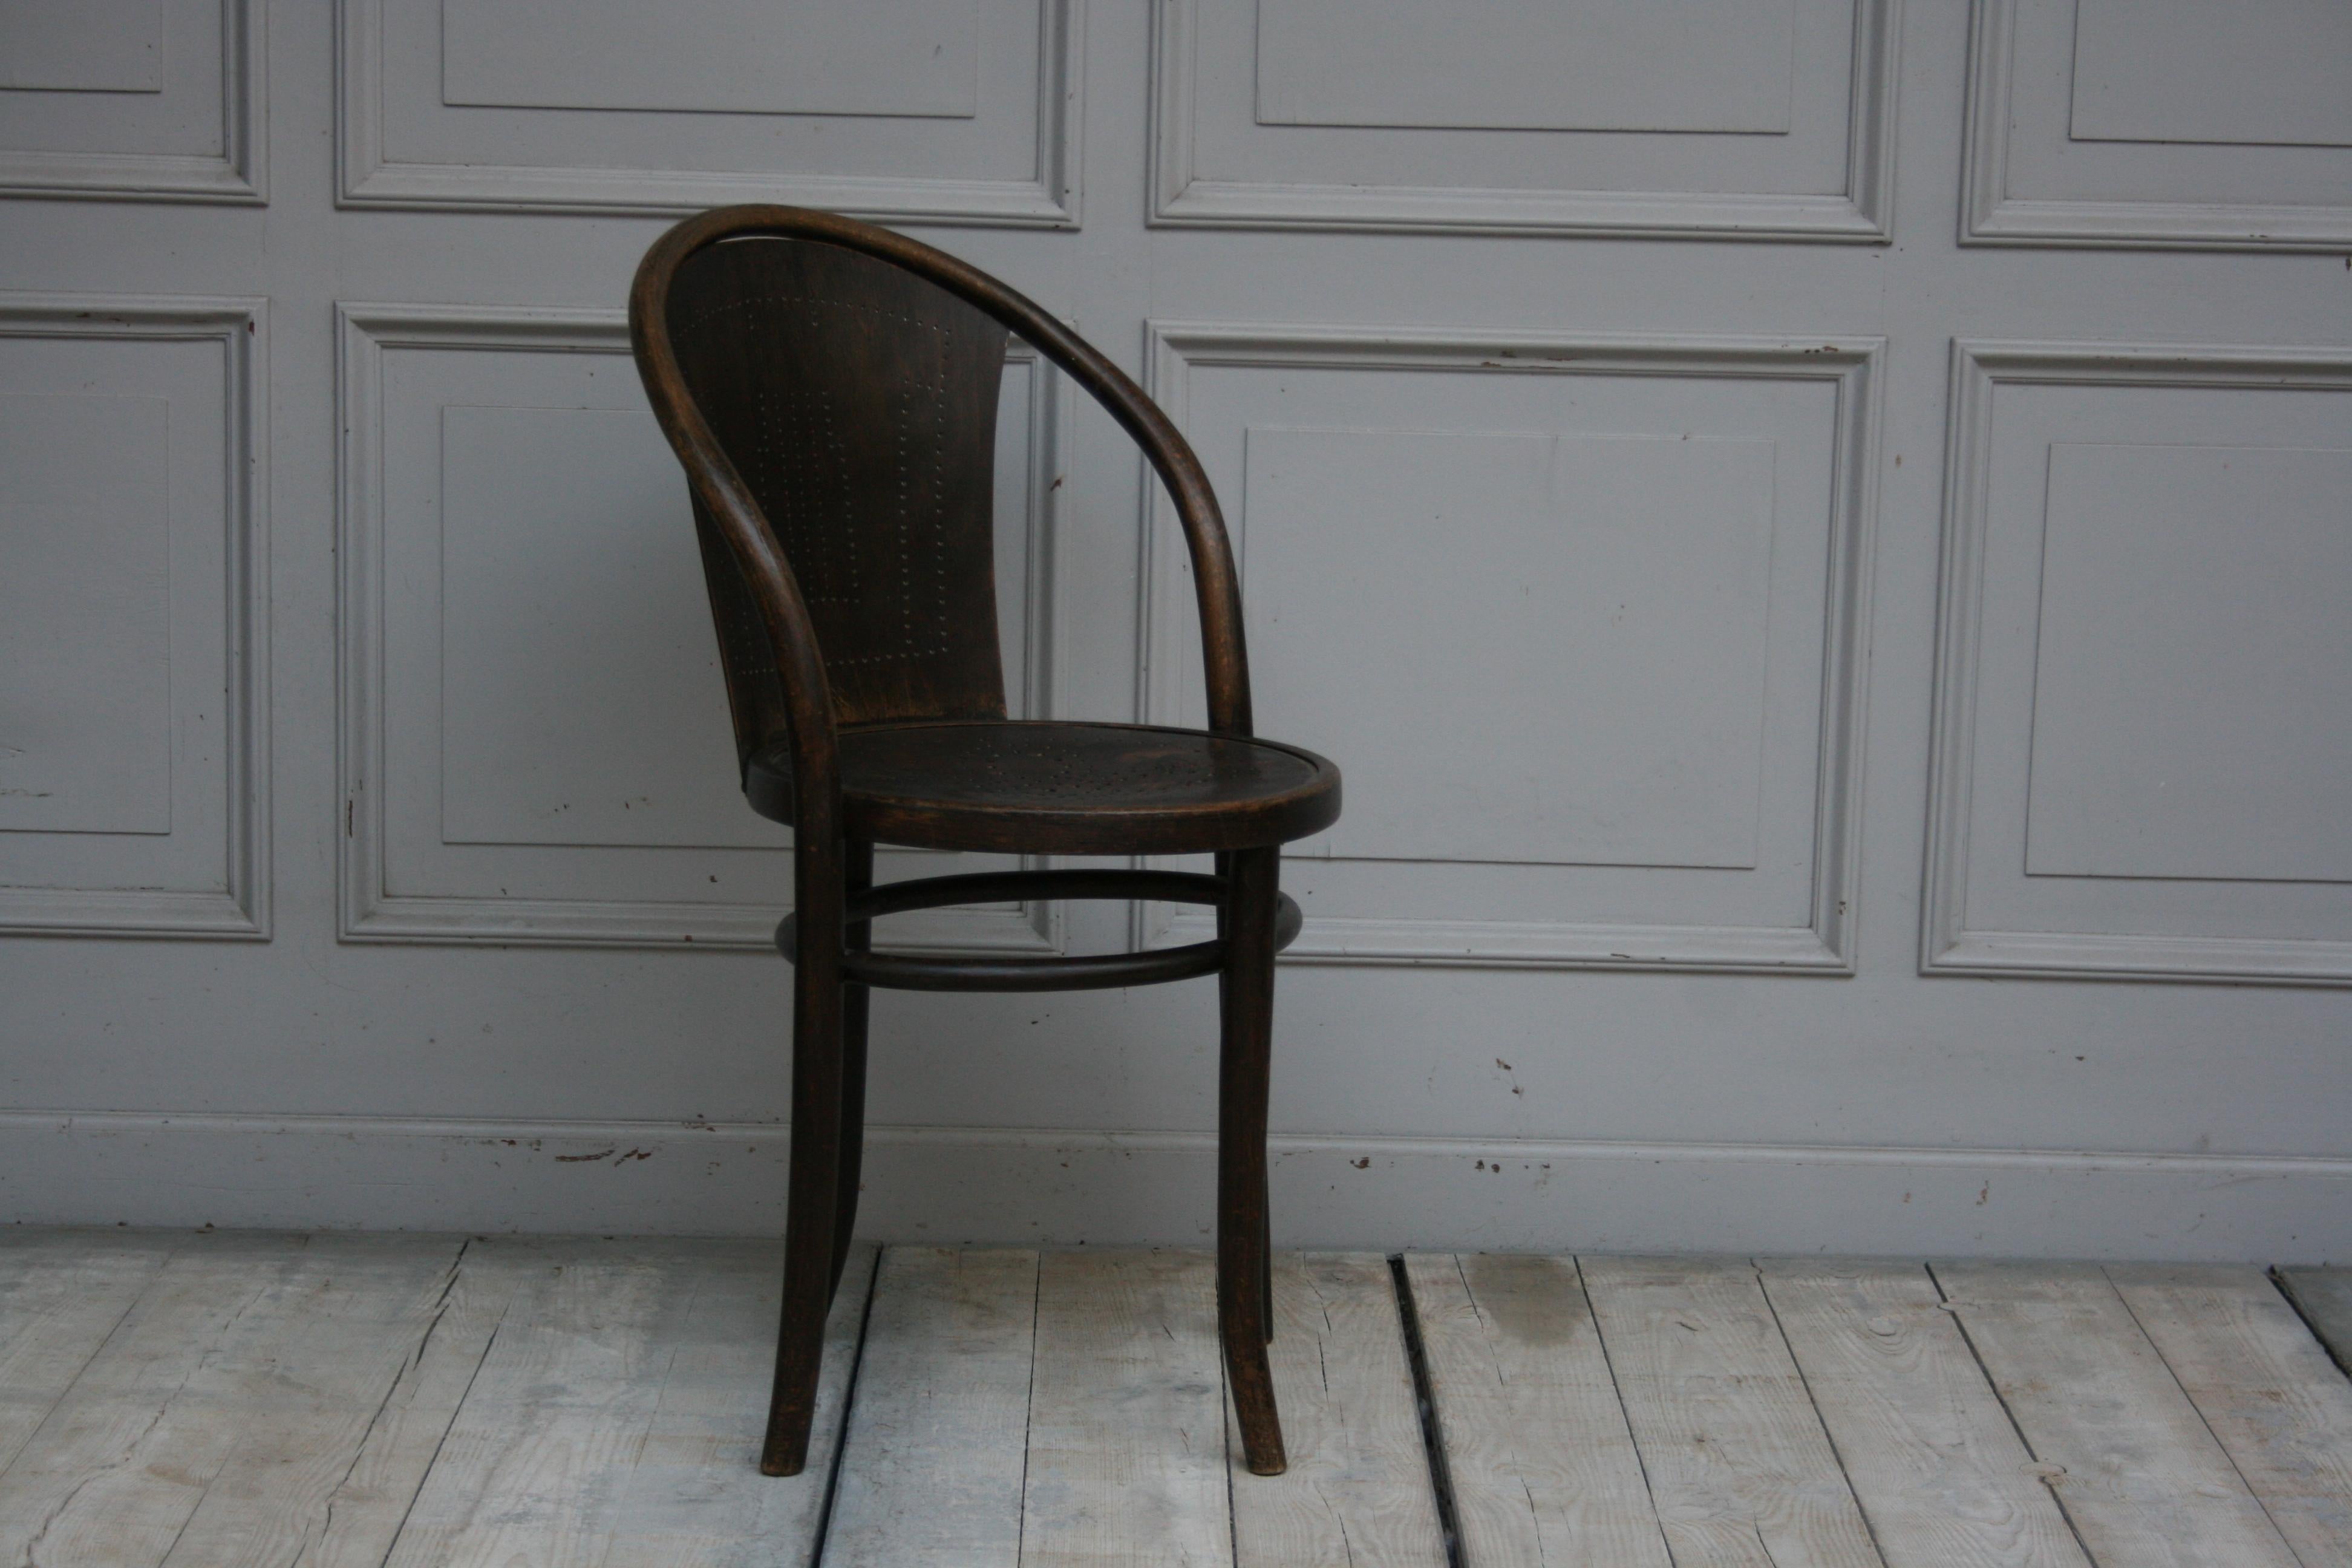 Seltener, sehr früher Stuhl des Modells 47 von Thonet mit gebogenem Buchenholzrahmen und schönen, gelochten Sitzdetails, um 1911. Entwurf von Michael Thonet. 

Abmessungen: Sitzhöhe 46,5 cm; Durchmesser ca. 46 cm; Höhe 83 cm.